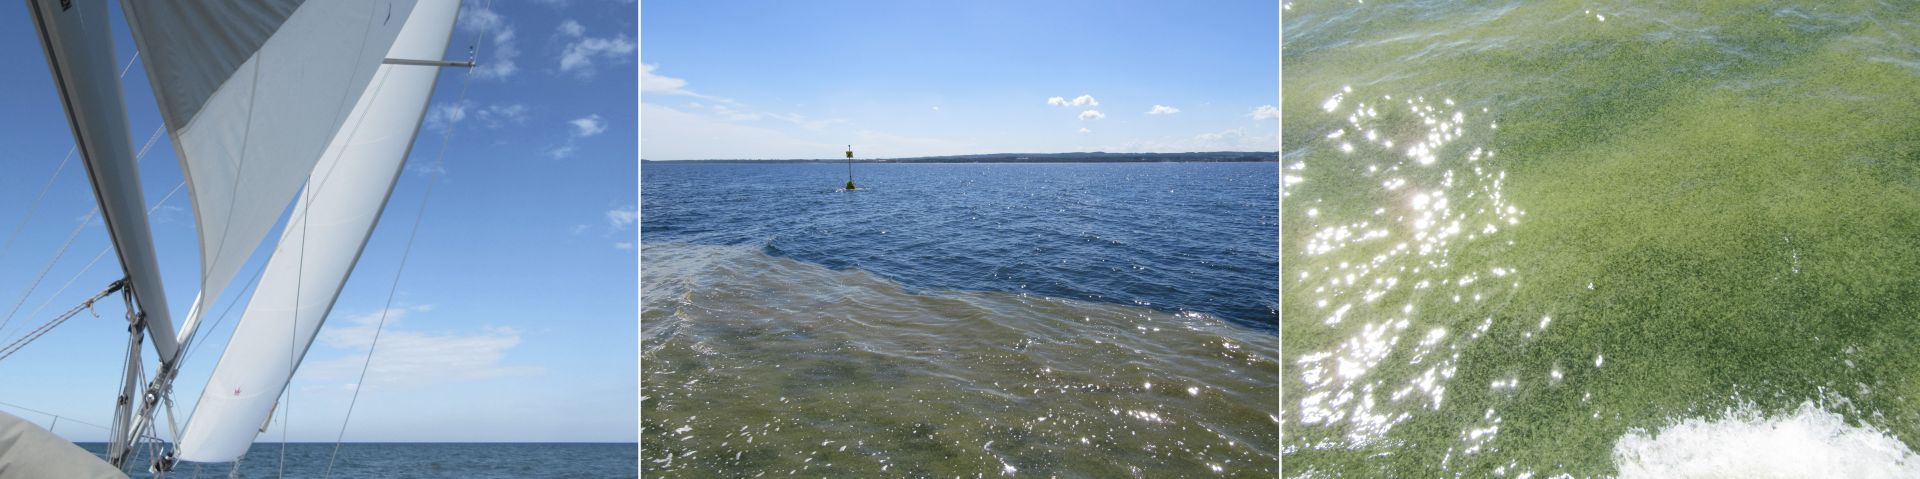 ost16-b040-algen-plage